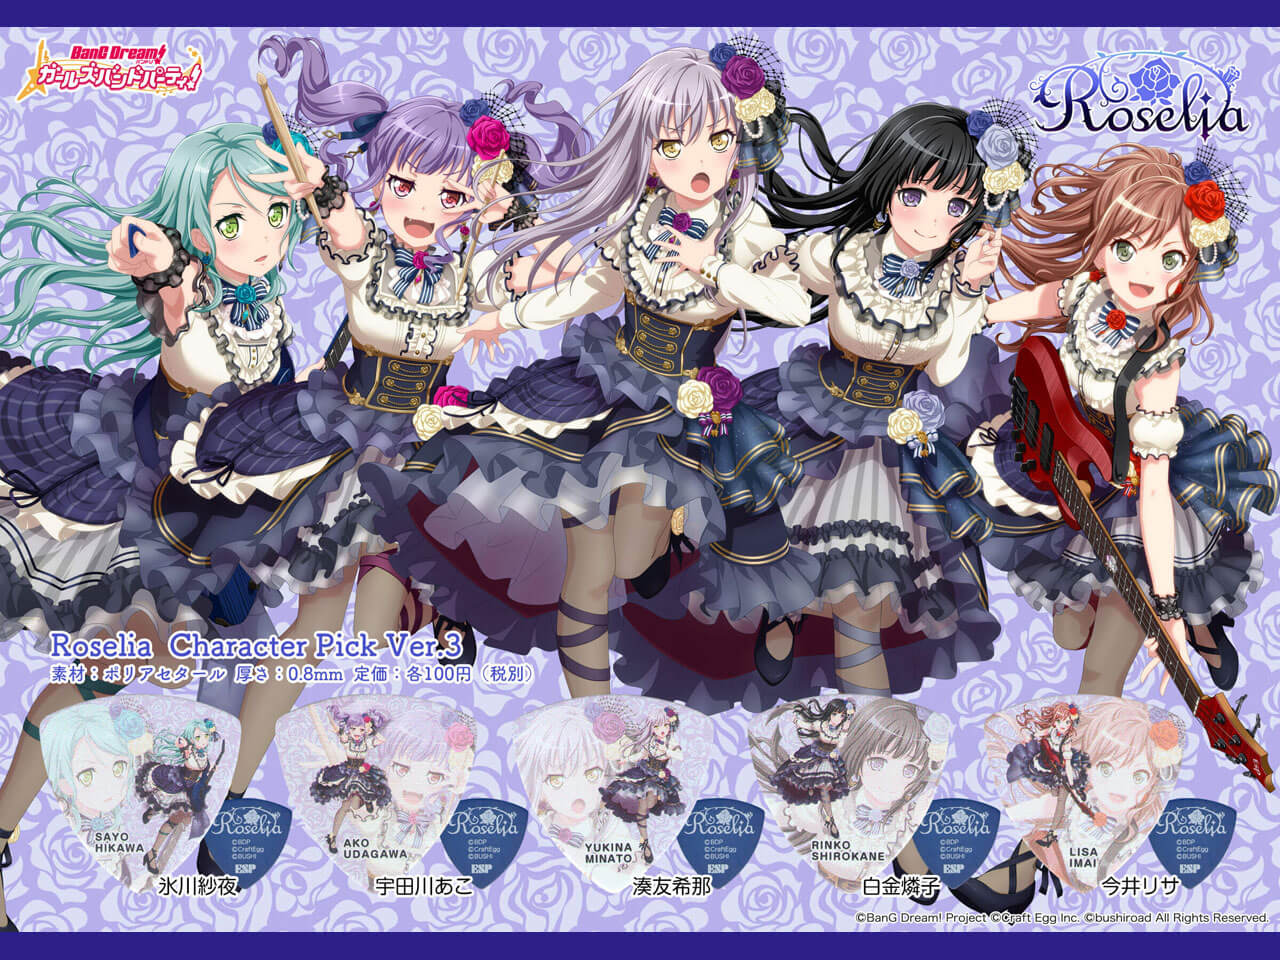 【ESP×BanG Dream!コラボピック】Roselia Character Pick Ver.3 "宇田川あこ"（GBP Ako Roselia 3）＆”ハメパチ” セット